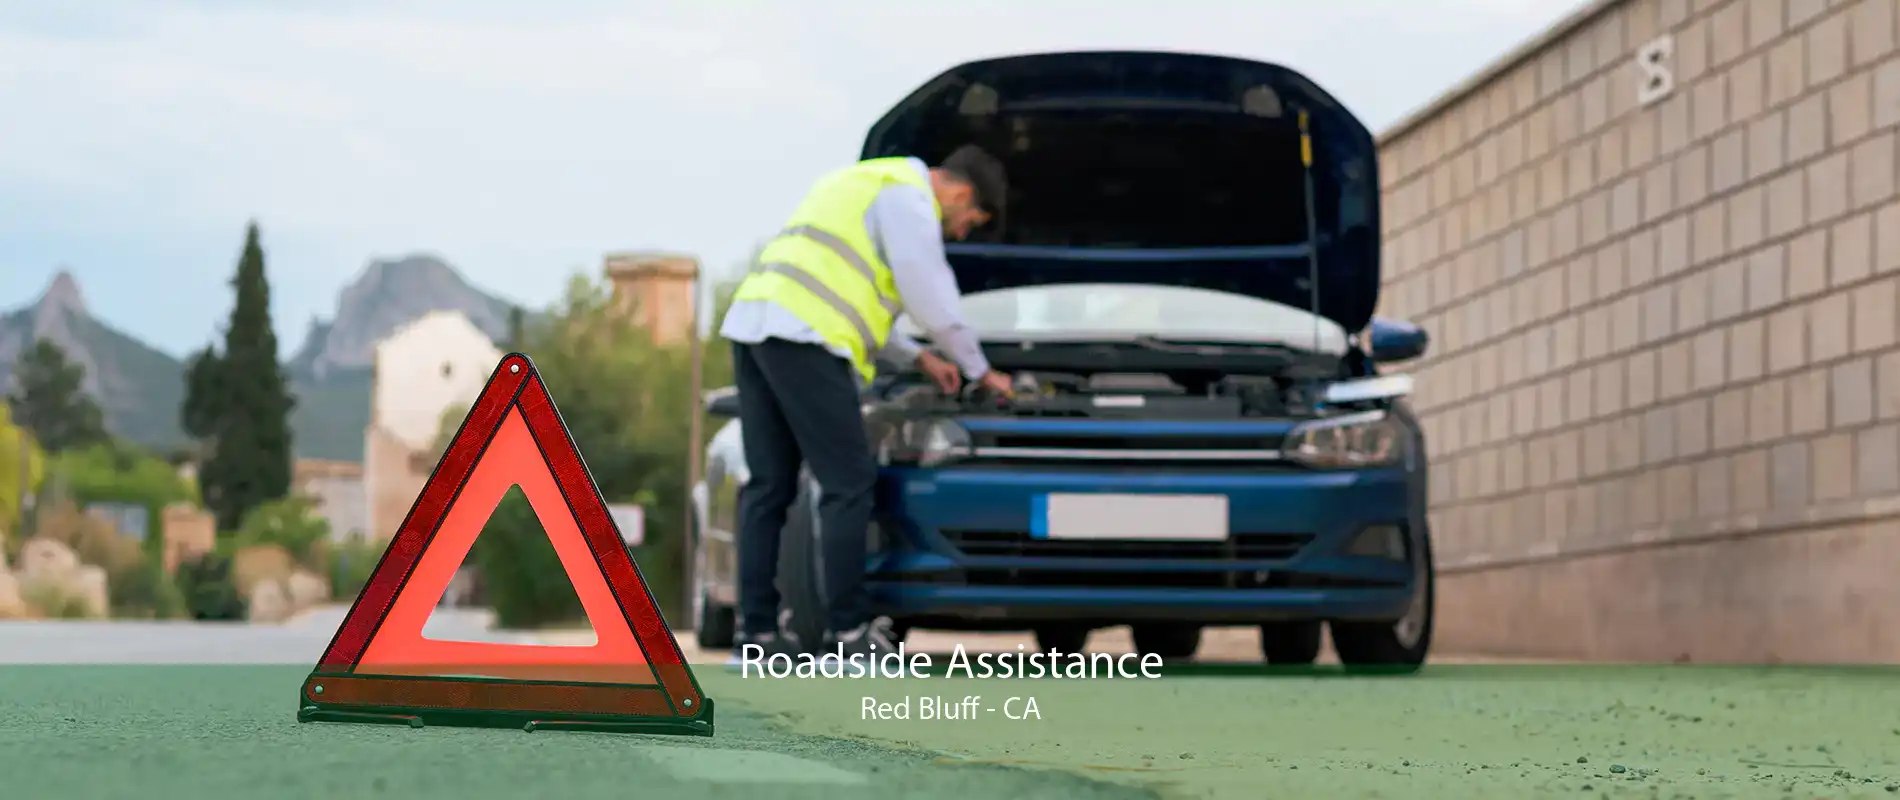 Roadside Assistance Red Bluff - CA